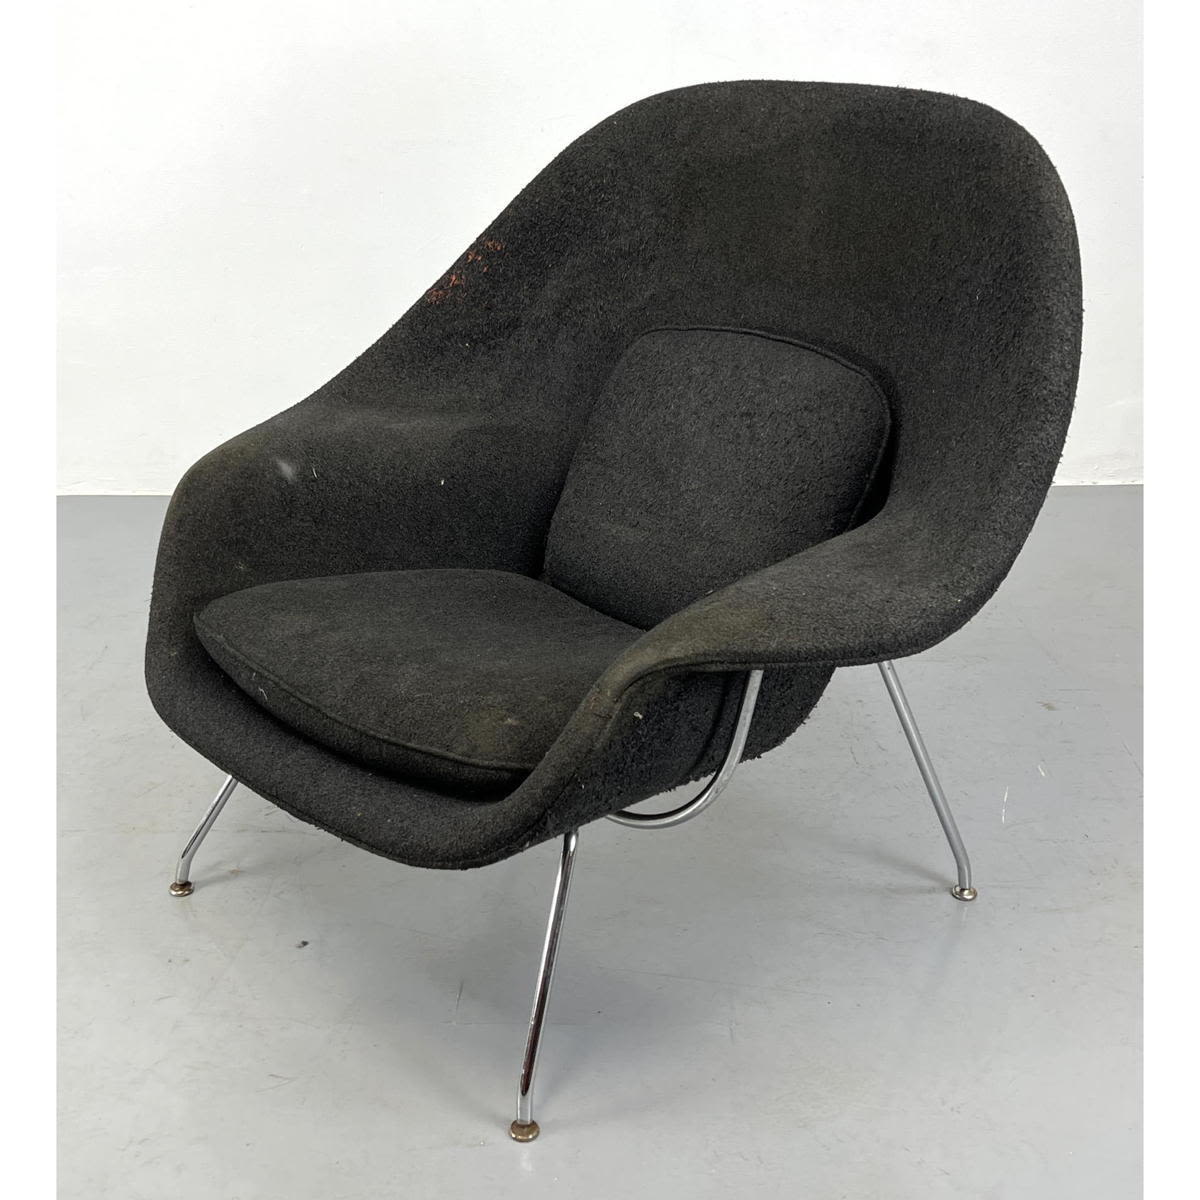 Eero Saarinen Womb chair by KNOLL 2a7862